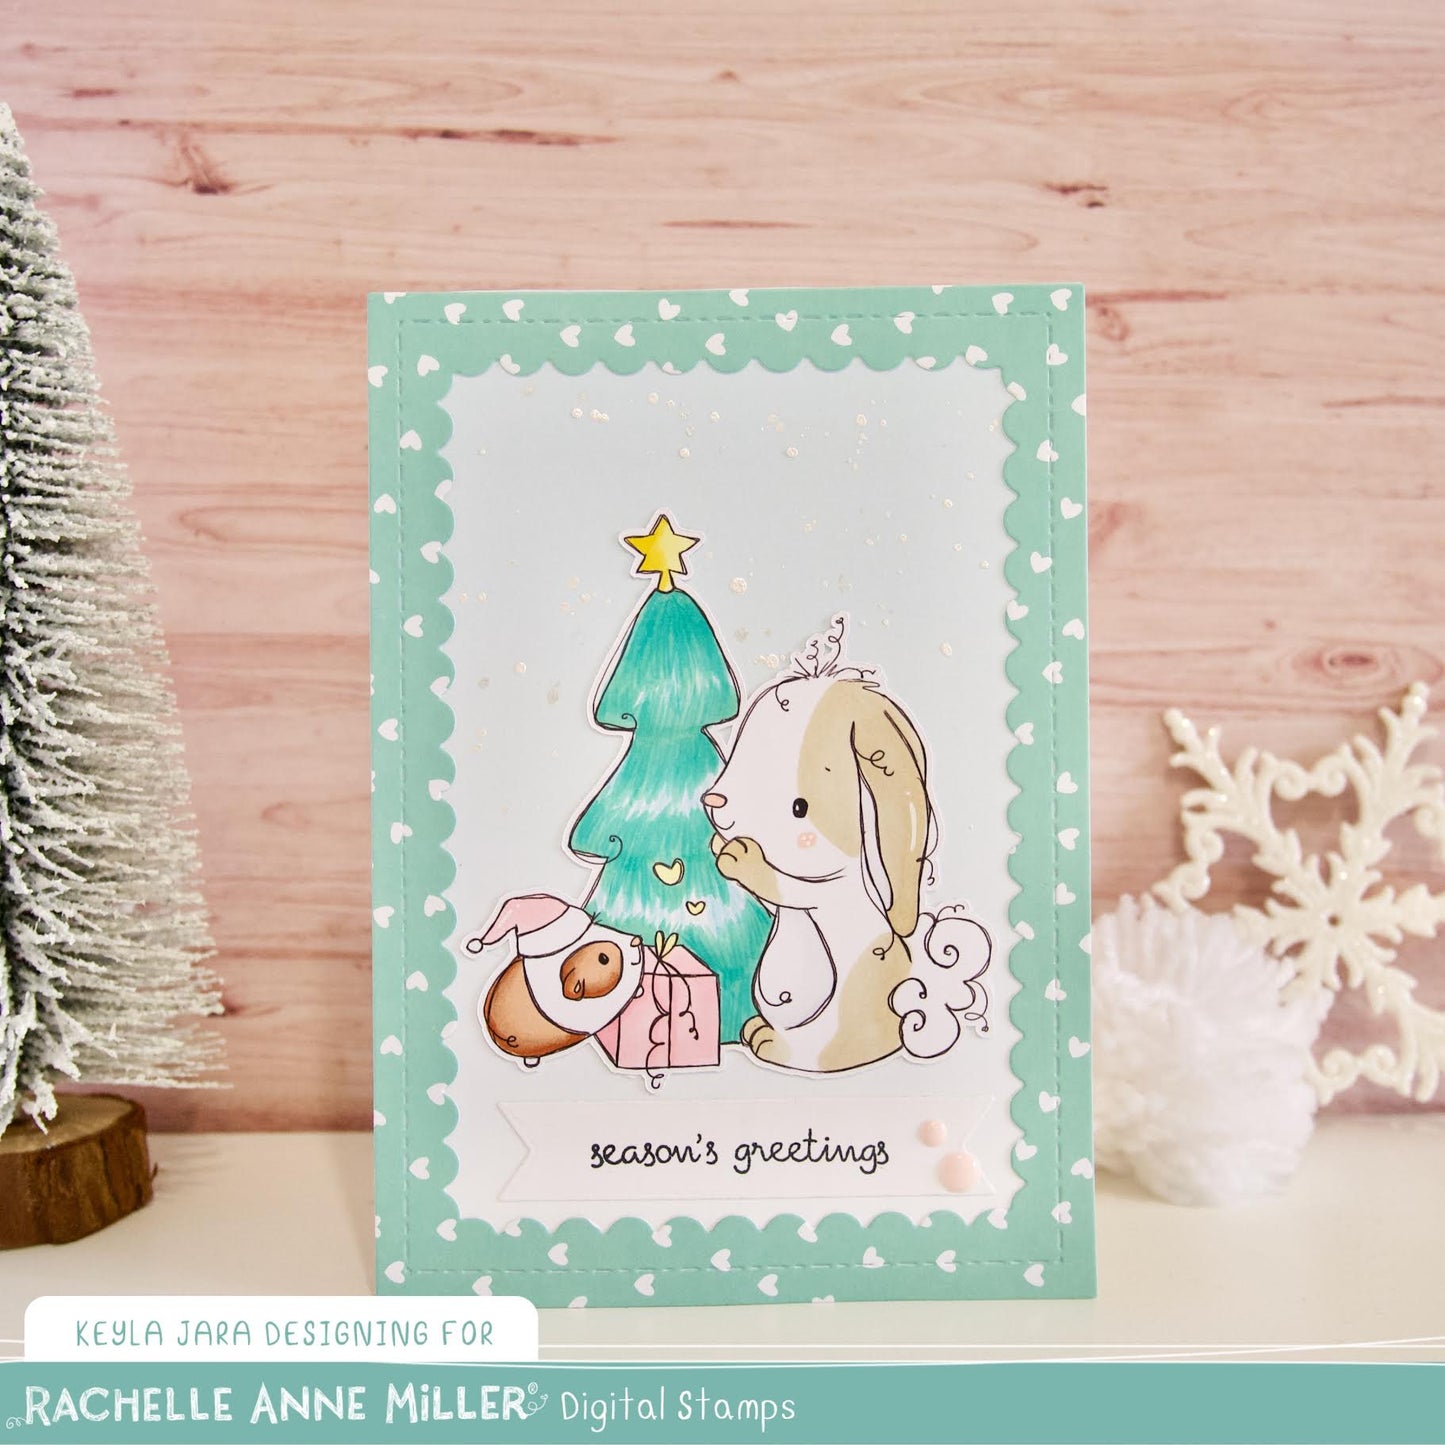 'Bunny & Guinea: Christmas Gift' Digital Stamp